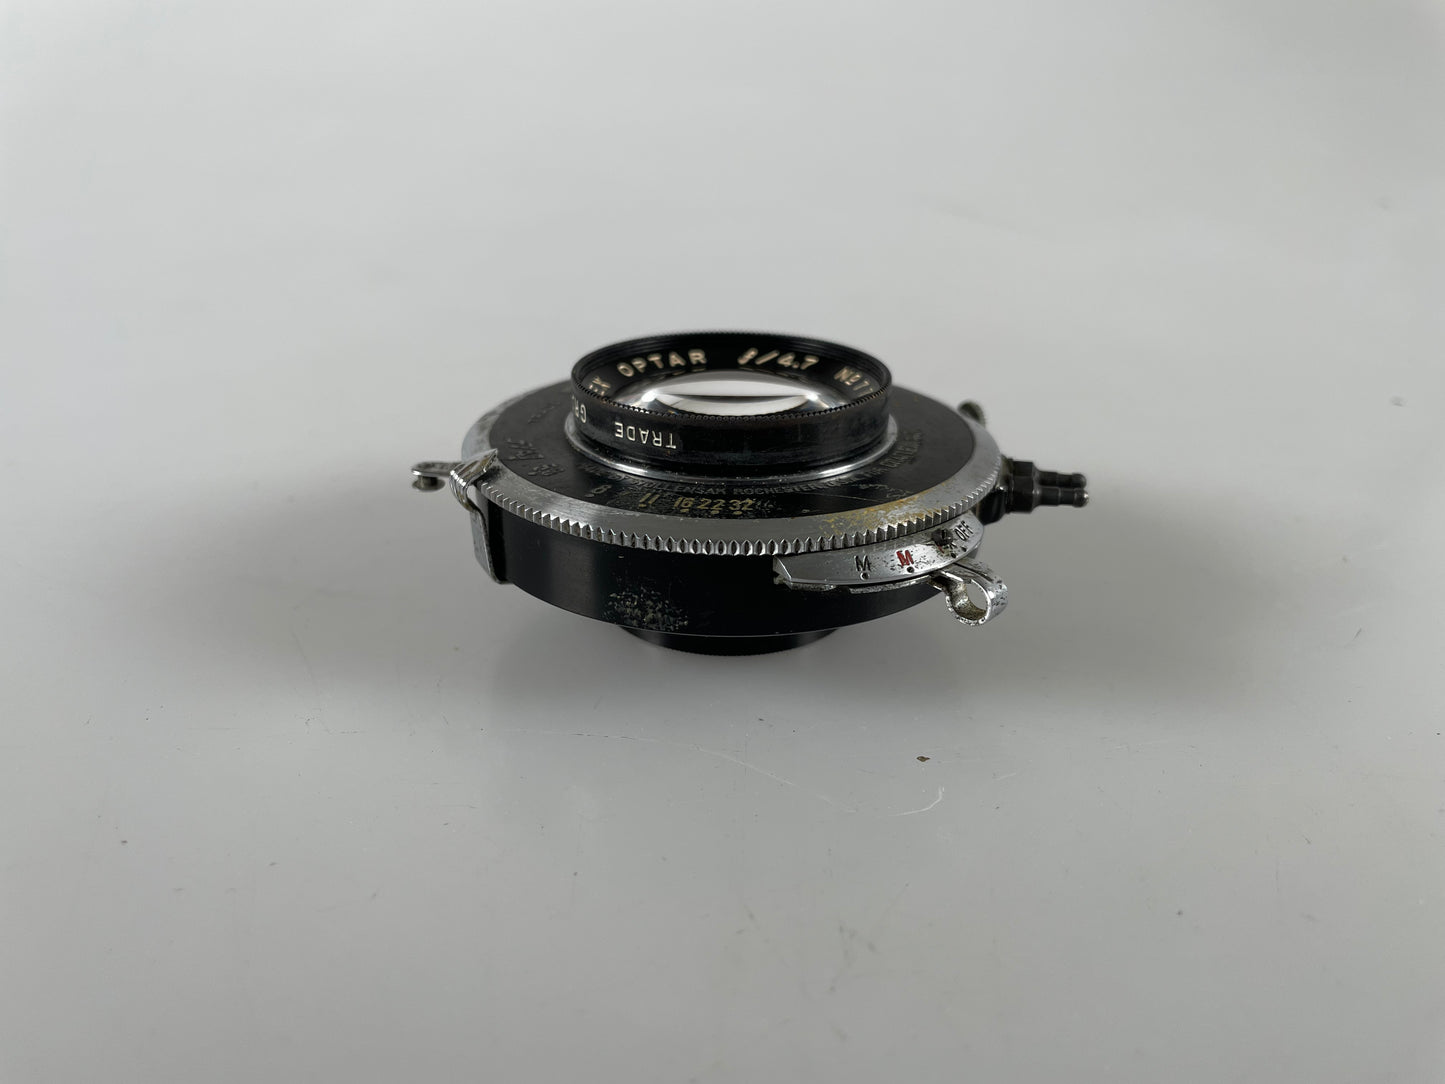 Graflex Optar 135mm f4.7 large format lens in shutter